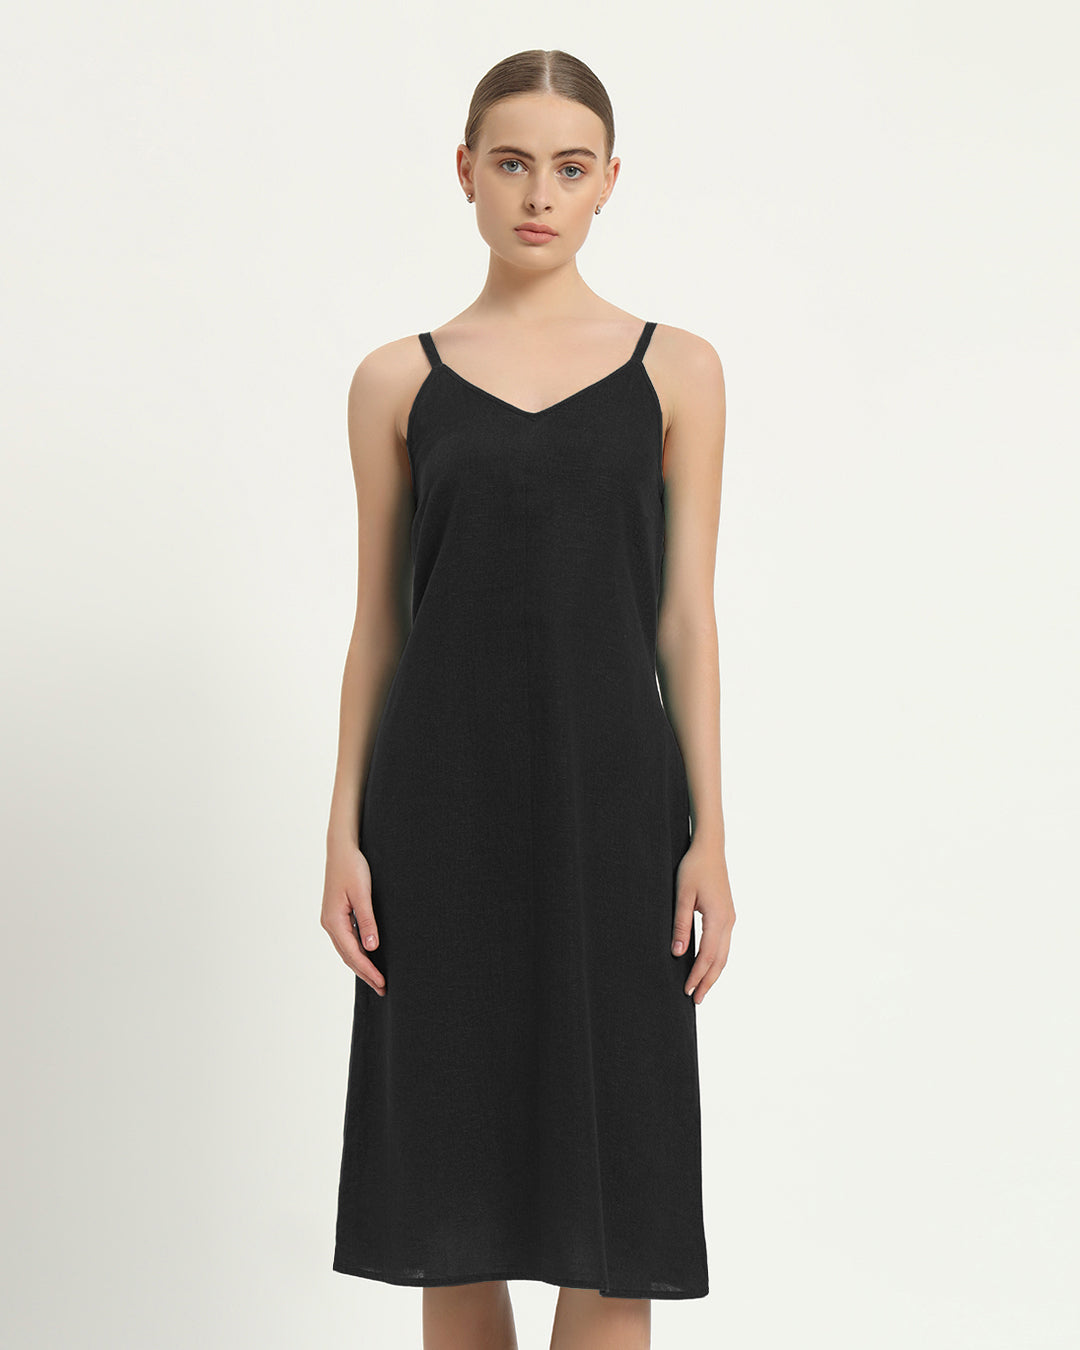 The Seesen Noir Cotton Dress